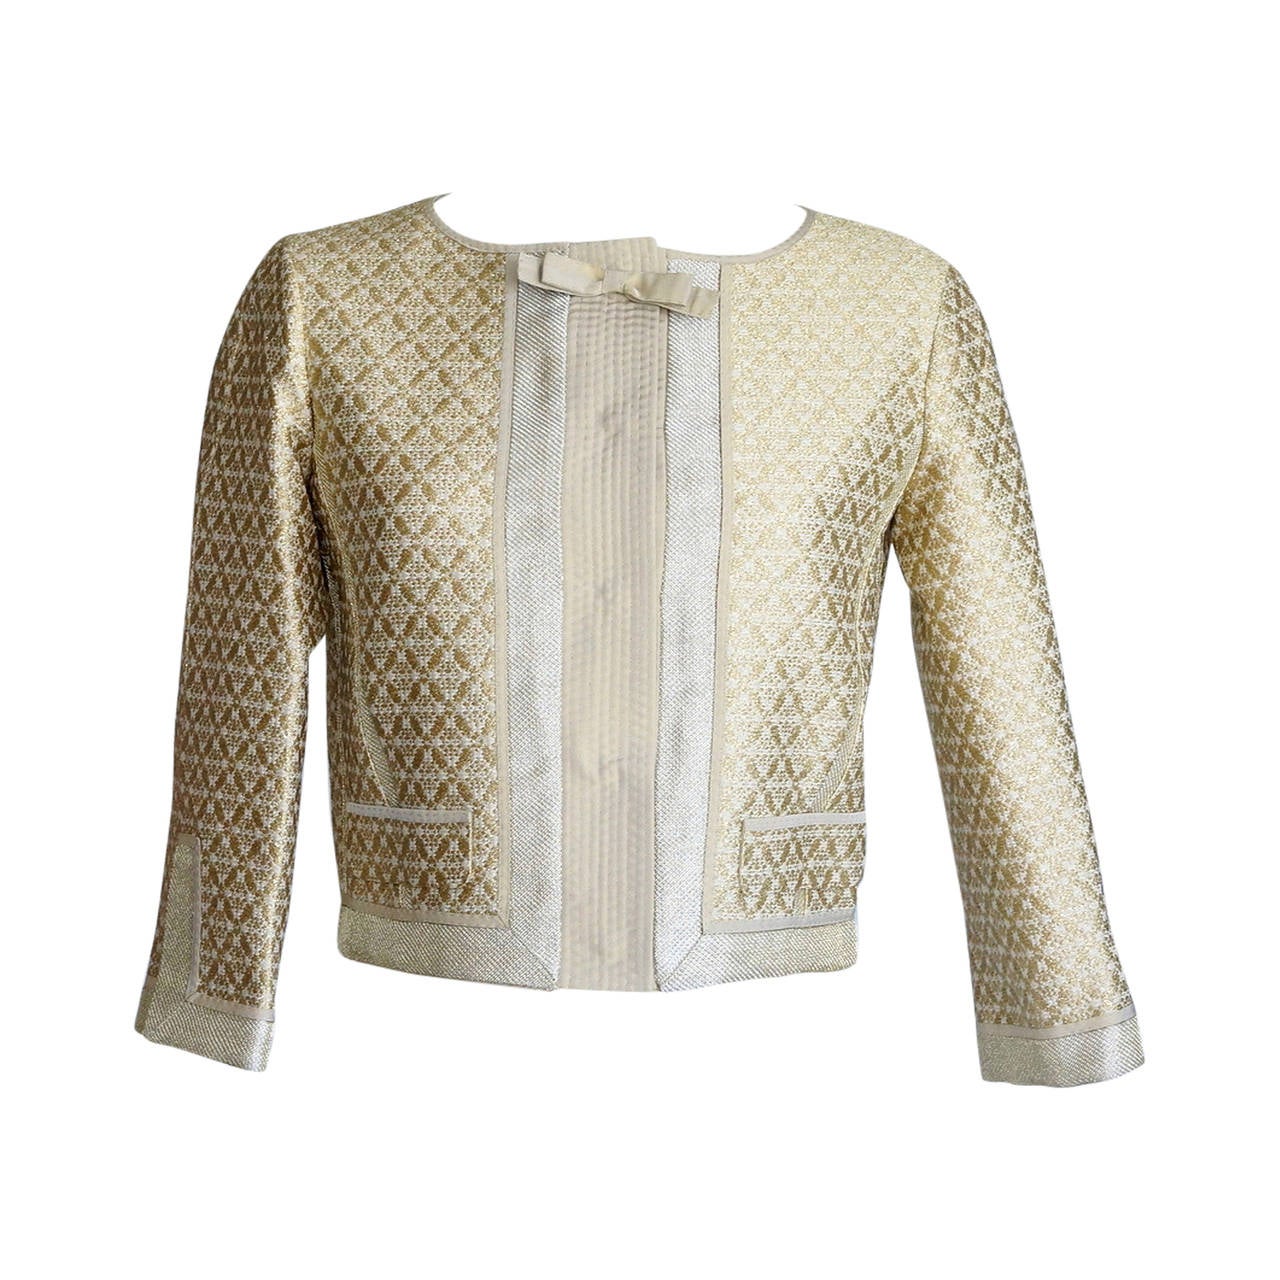 Die Louis Vuitton Jacke aus goldenem Brokatstoff mit schönen Stoff und Details 34 / 4 